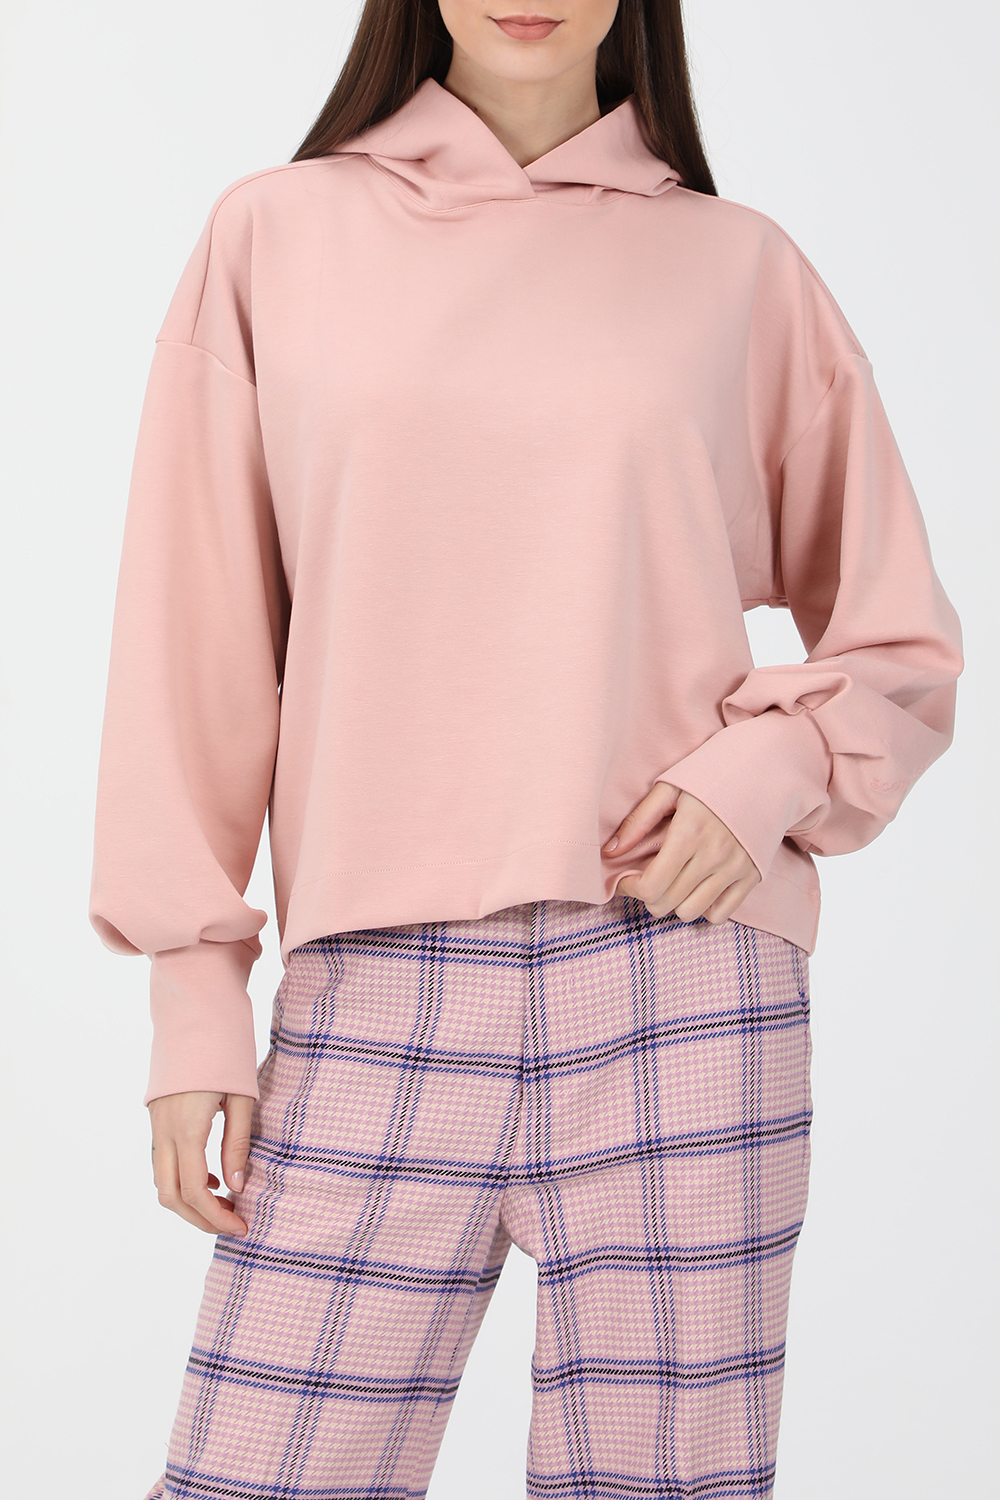 SCOTCH & SODA – Γυναικεία φούτερ μπλούζα SCOTCH & SODA ροζ 1821056.0-00P3